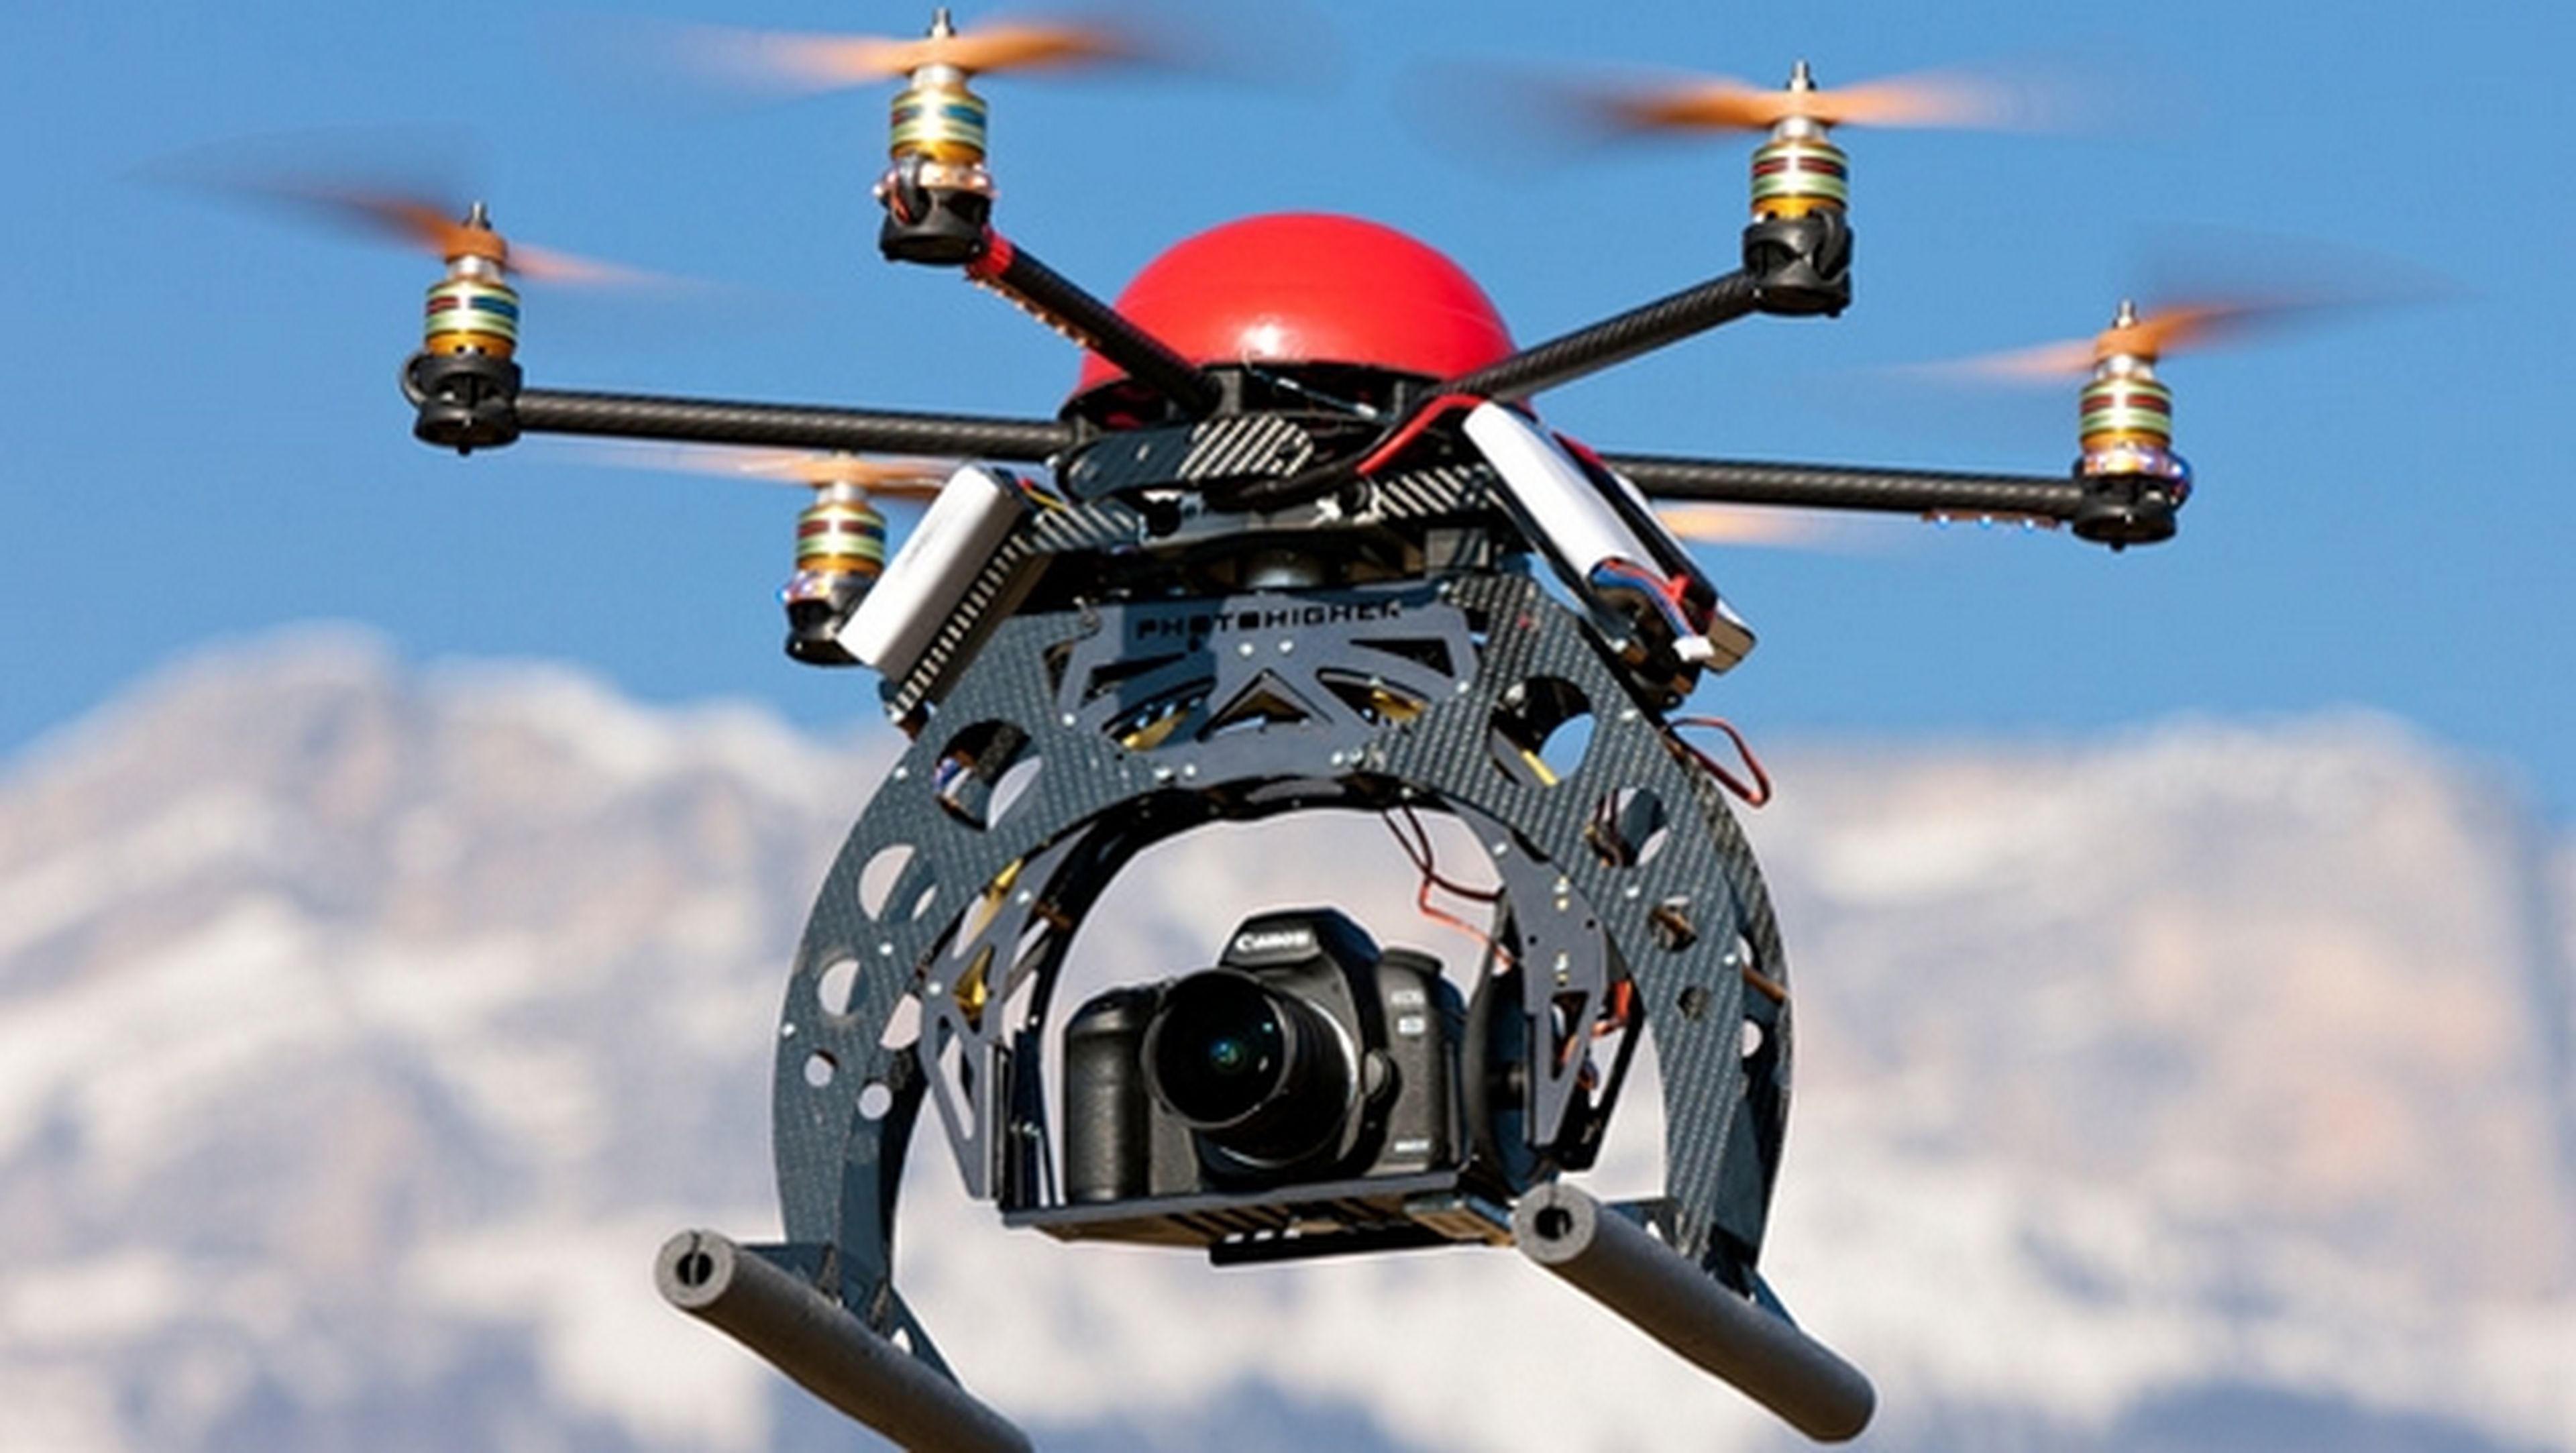 Usan drones no tripulados con cámaras infrarrojas para localizar plantaciones de cannabis y robarlas, o extorsionar a sus dueños.